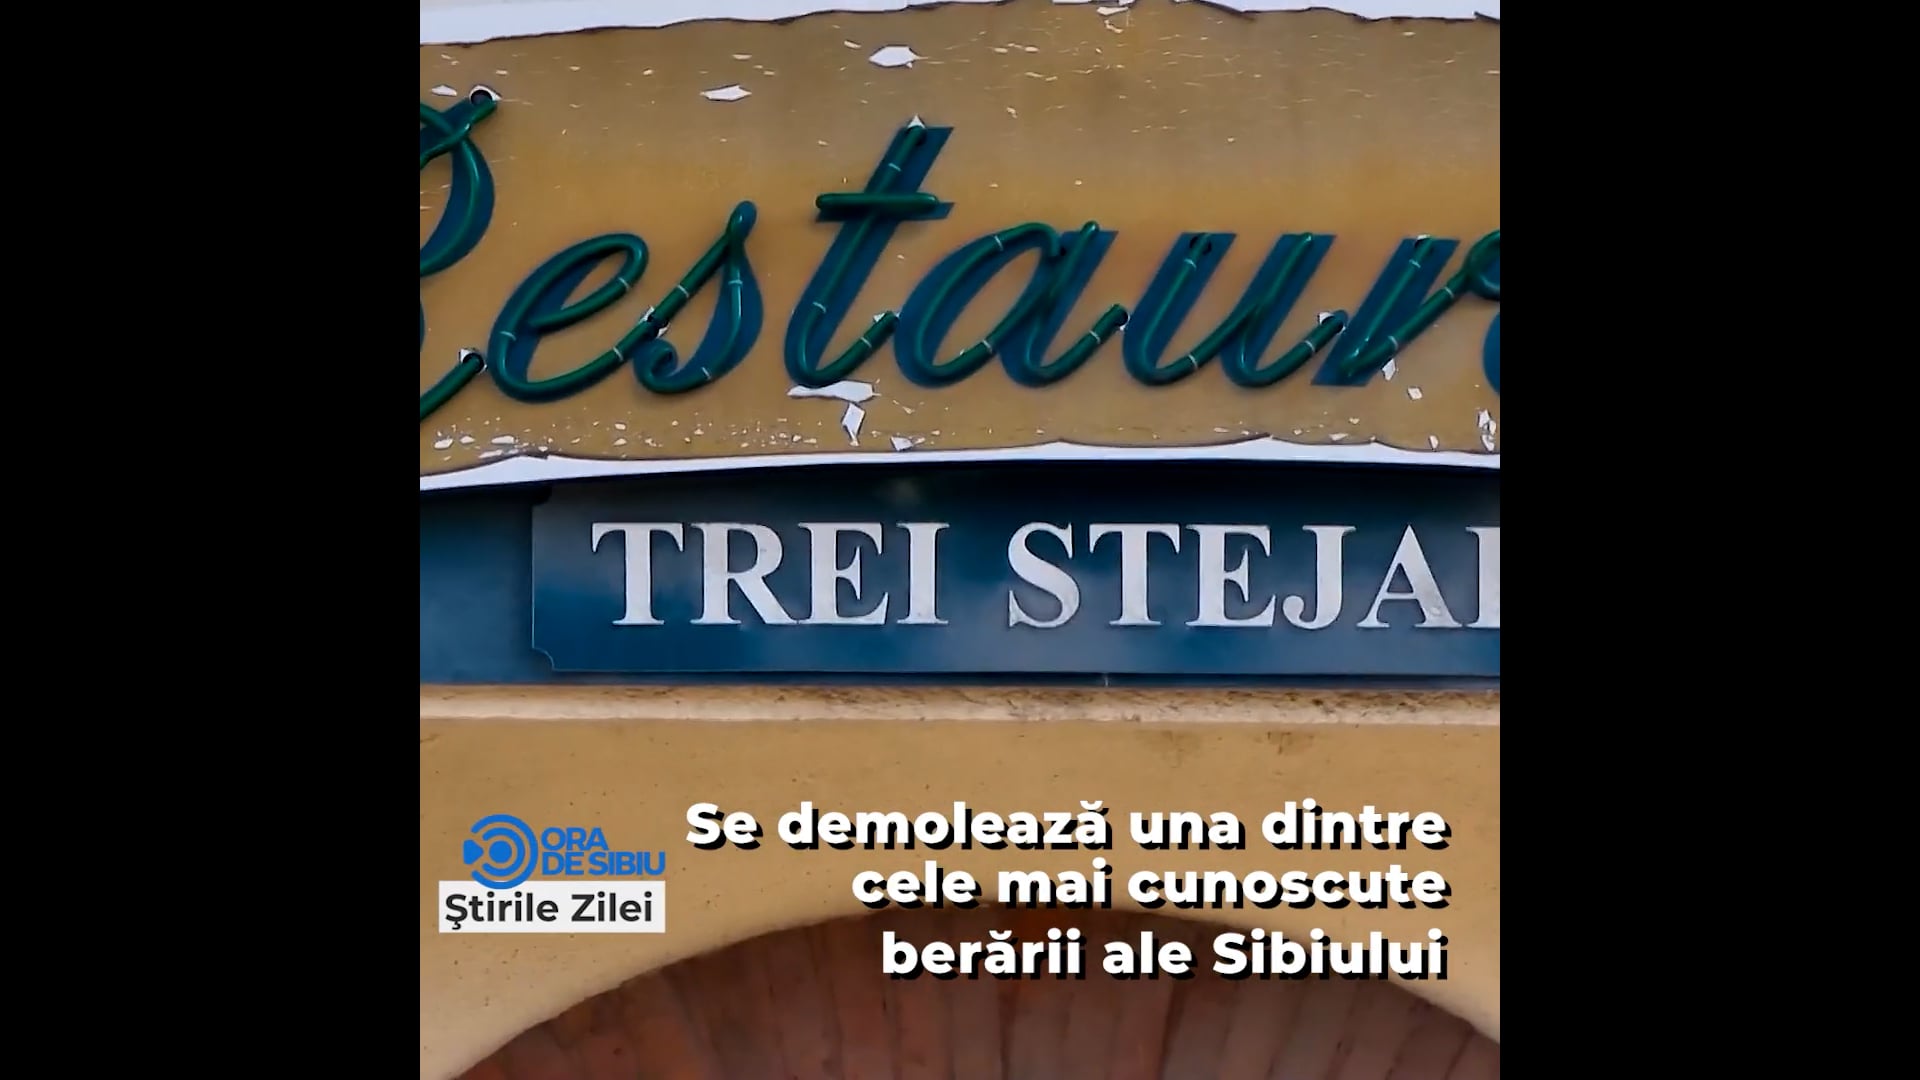 Se demolează una dintre cele mai cunoscute berării ale Sibiului